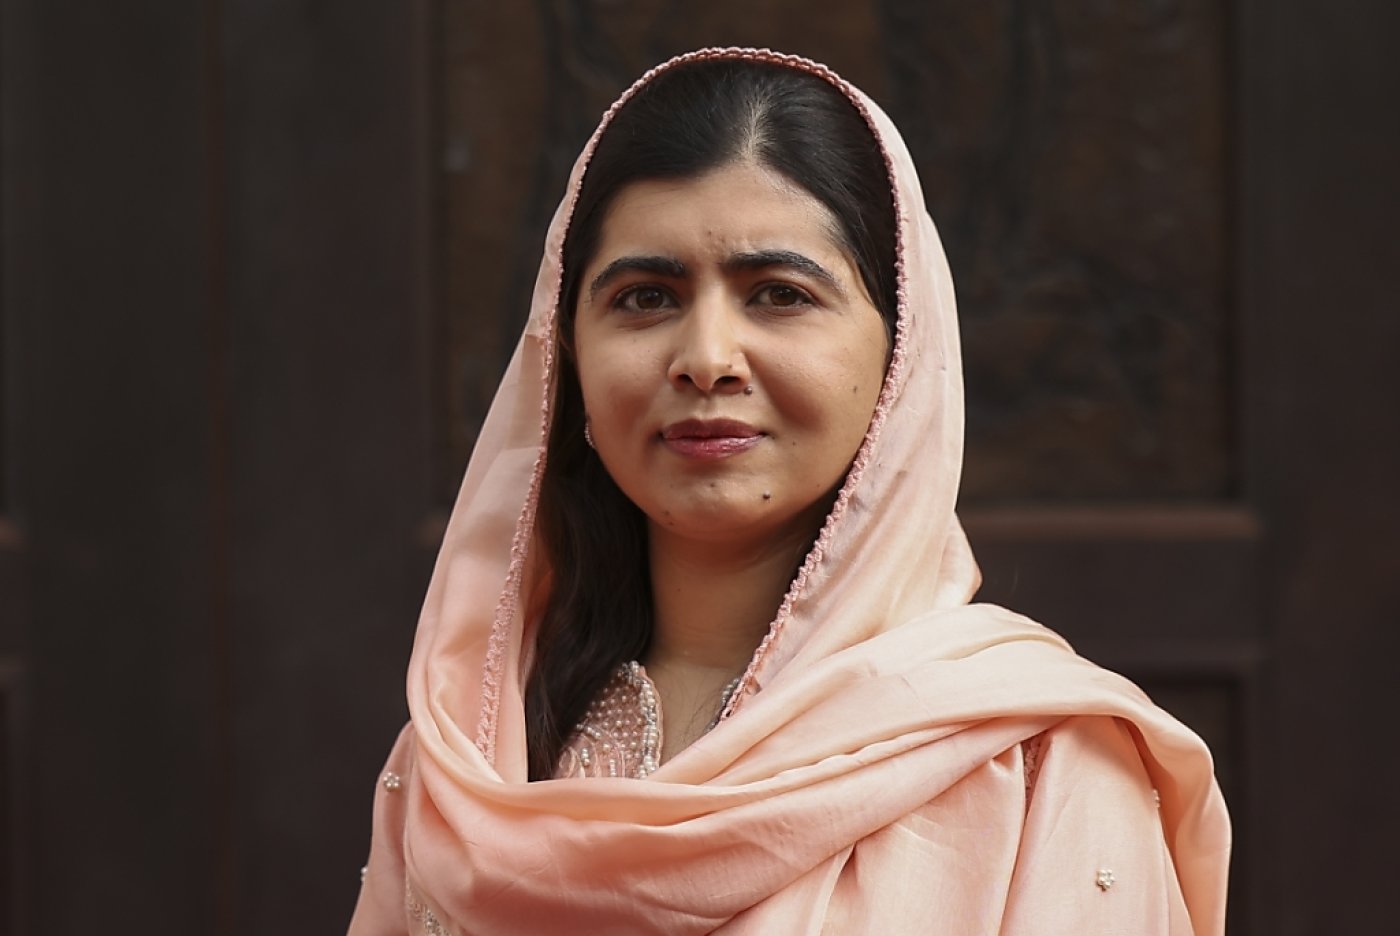 La militante des droits des femmes, Malala Yousafzai, 26 ans, est louée à travers le monde (archives). KEYSTONE